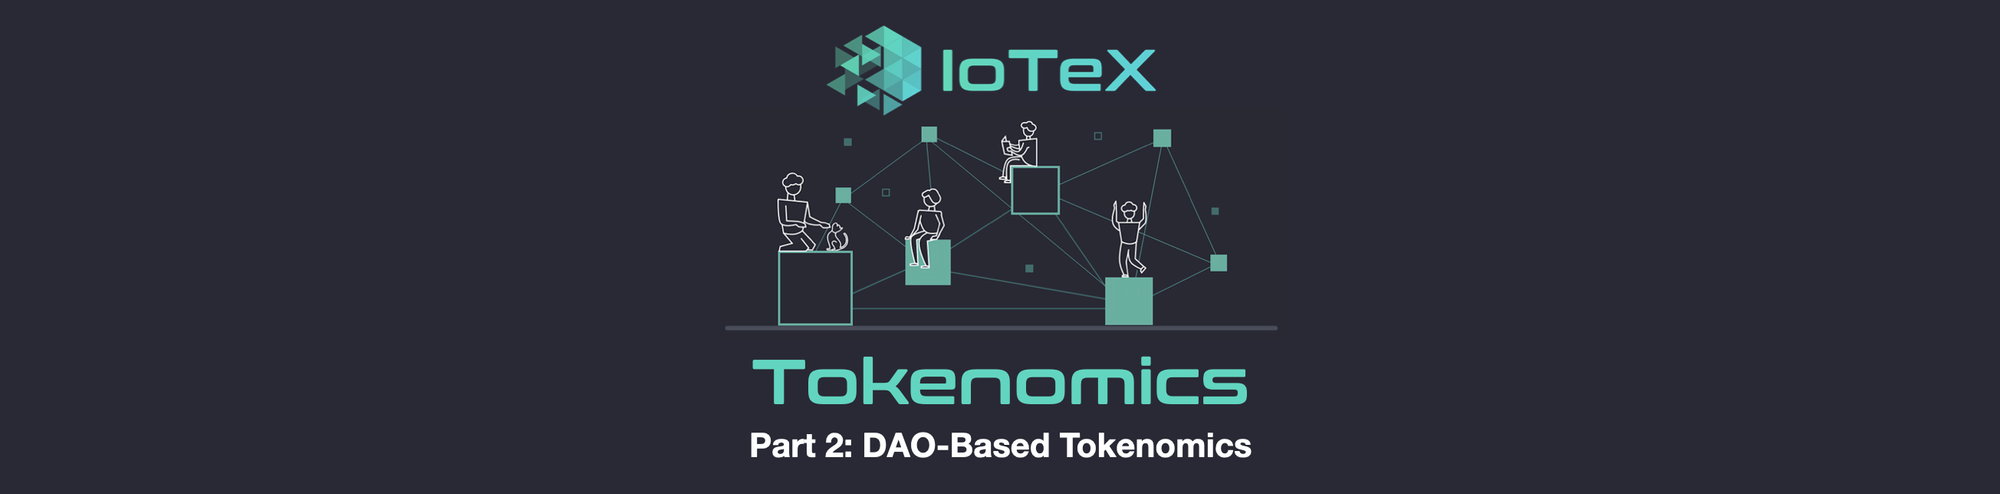 IoTeX Tokenomics — Part 2: DAO-Based Tokenomics